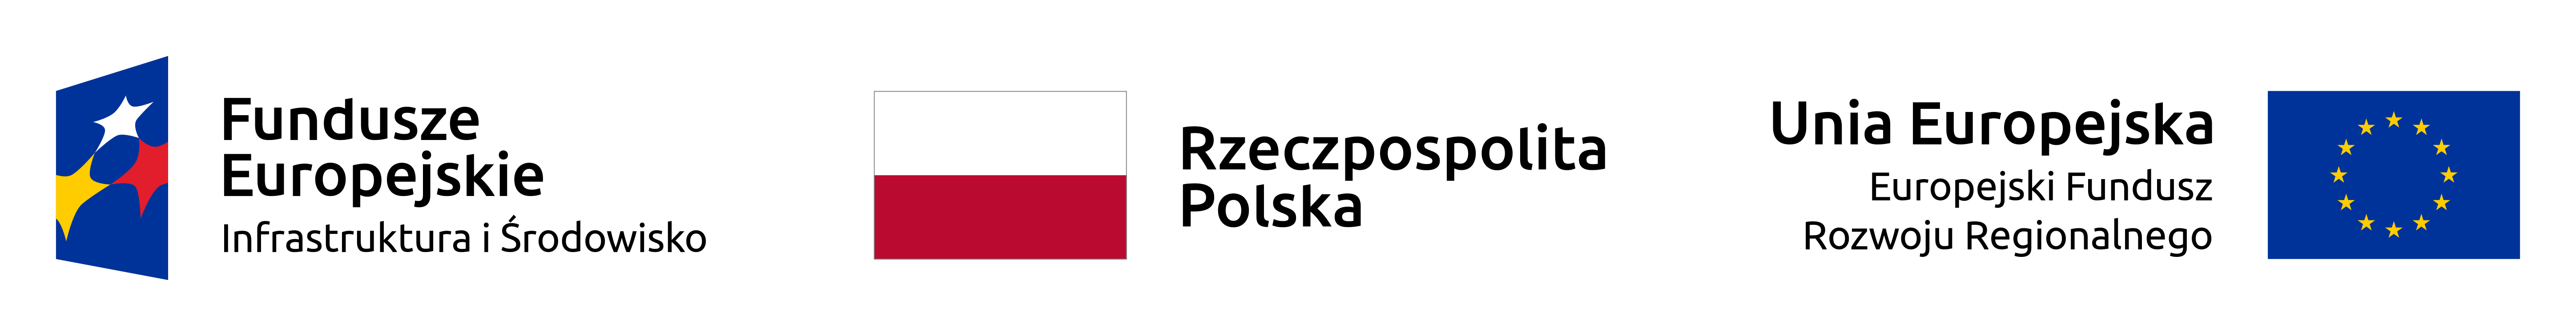 infografika z flagą polski, unii europejskiej oraz logotypem funduszy